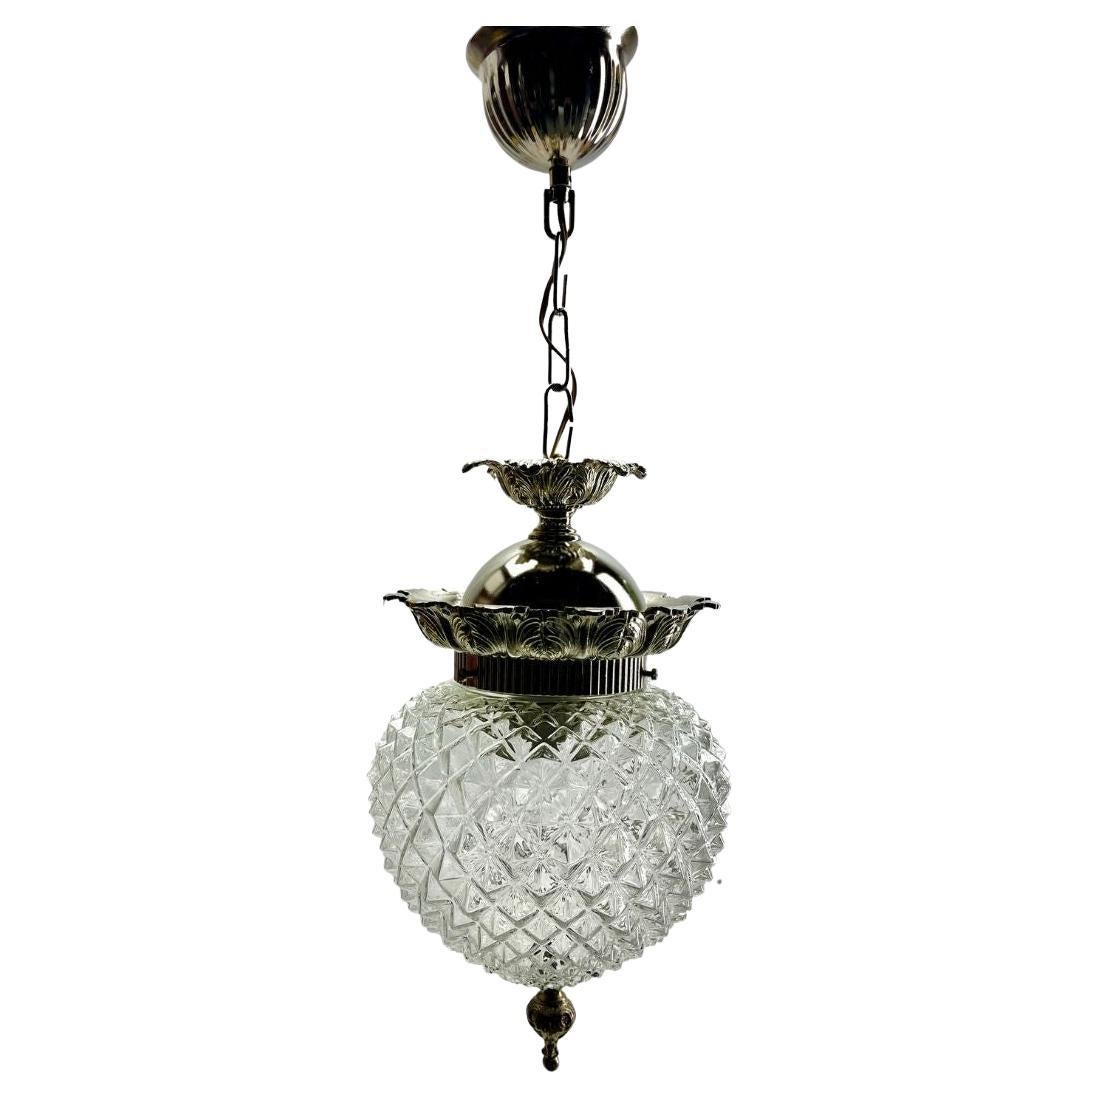 Art Deco 1 Ceiling Lamp, Scailmont Belgium Glass Shade, 1930s